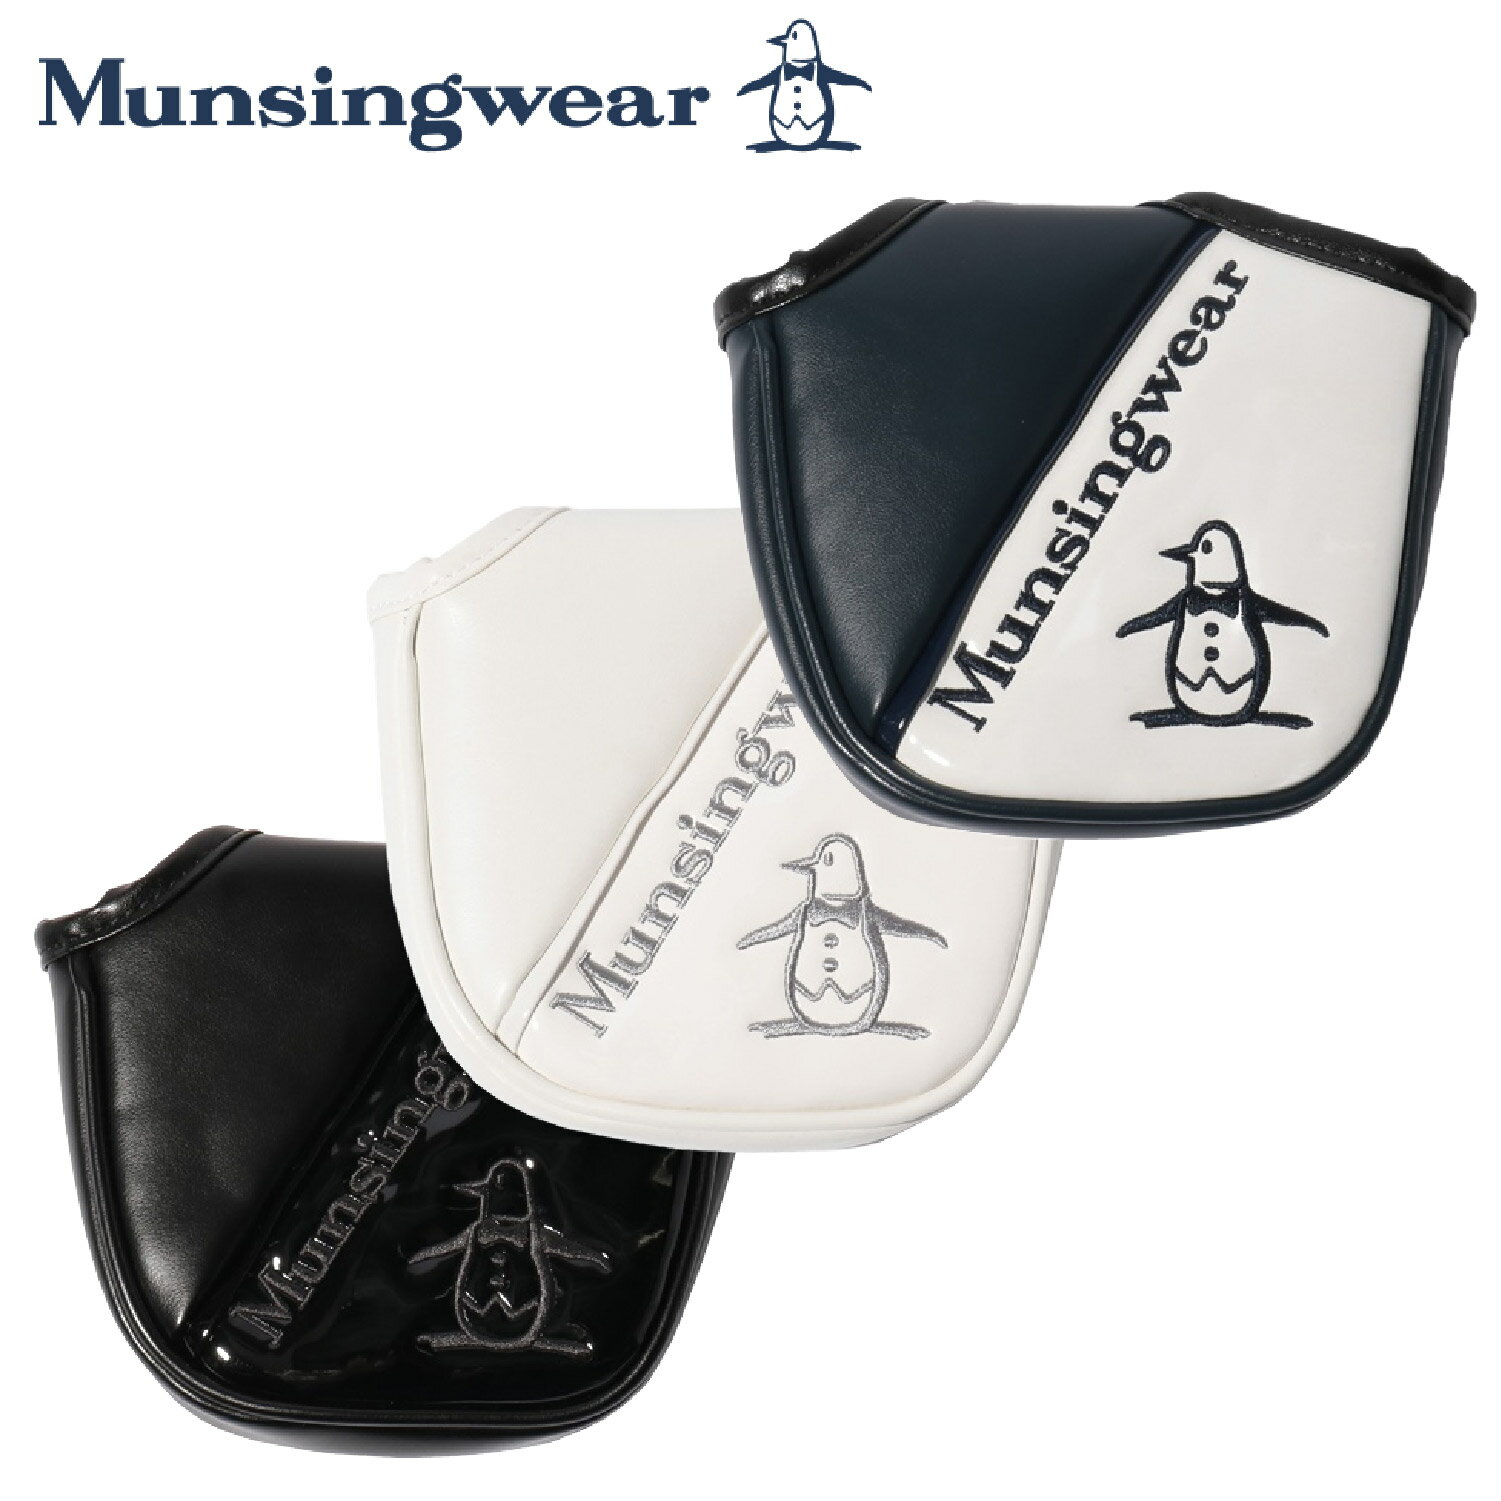 見事な創造力 Munsingwear MQBVJG51 マグネット式マレット型対応パターカバー マンシングウェア ゴルフ ヘッドカバー ヘッドカバー